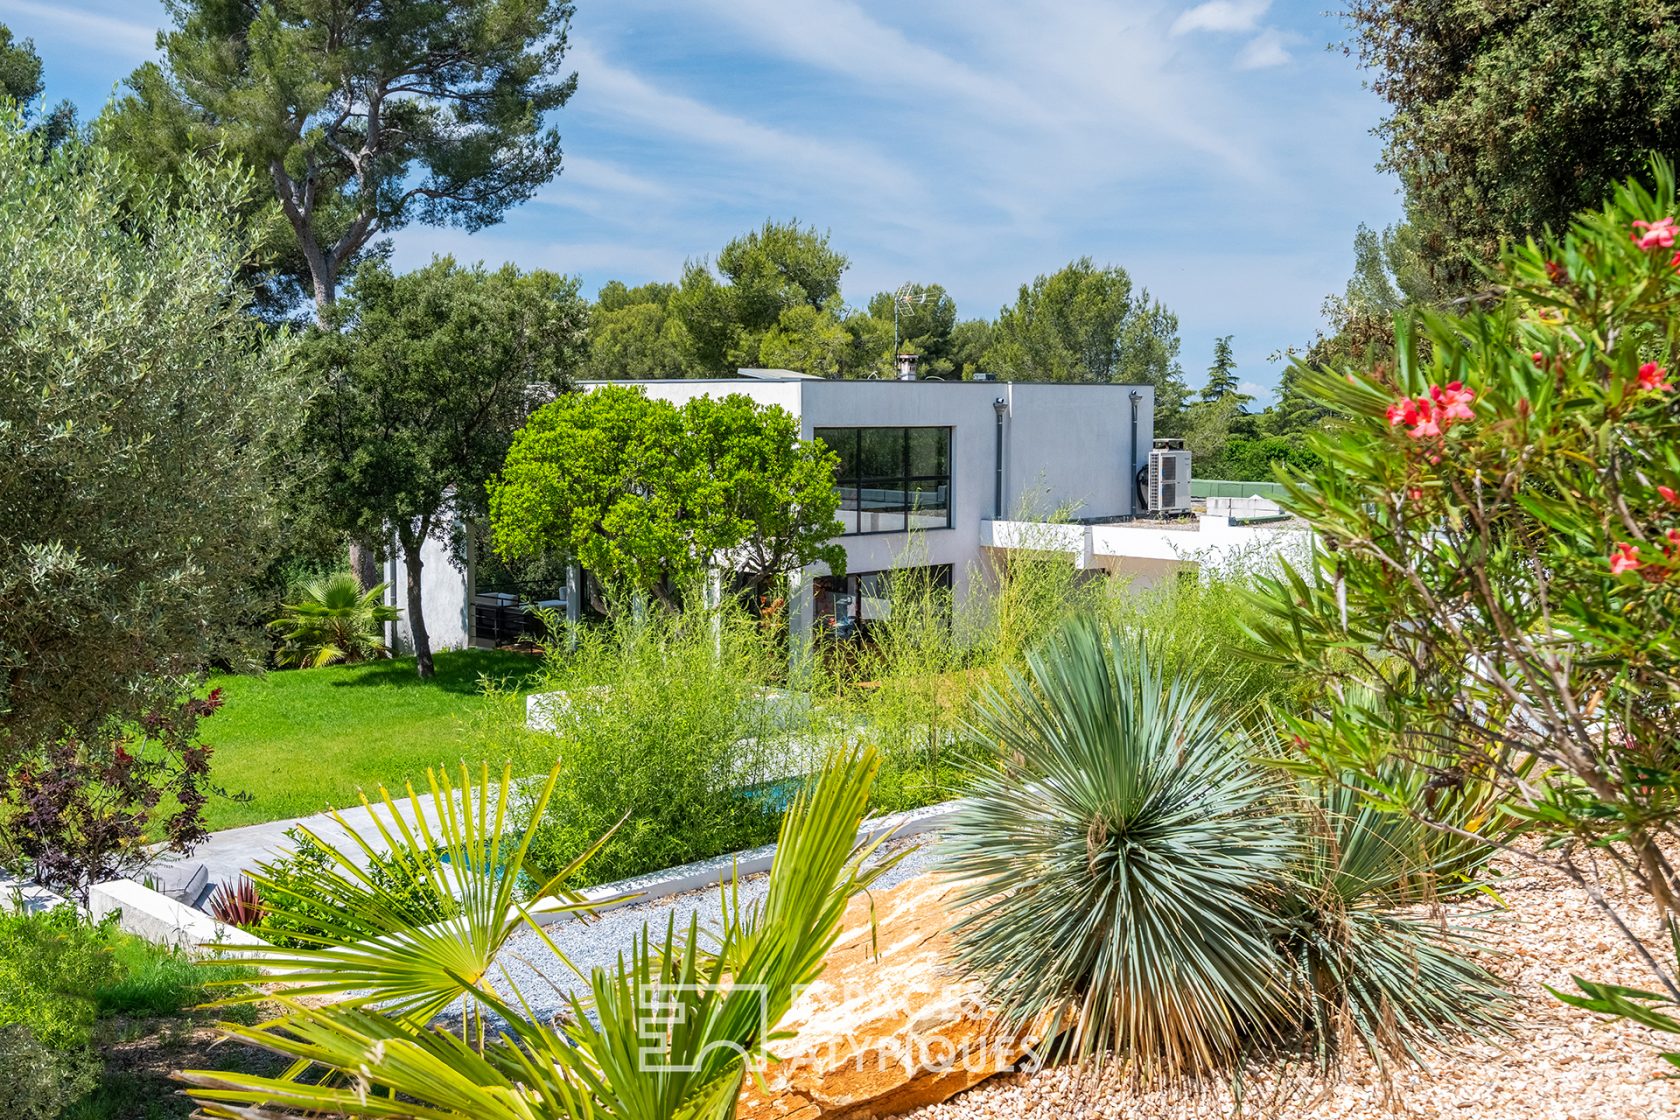 Maison californienne avec jardin exotique paysagé